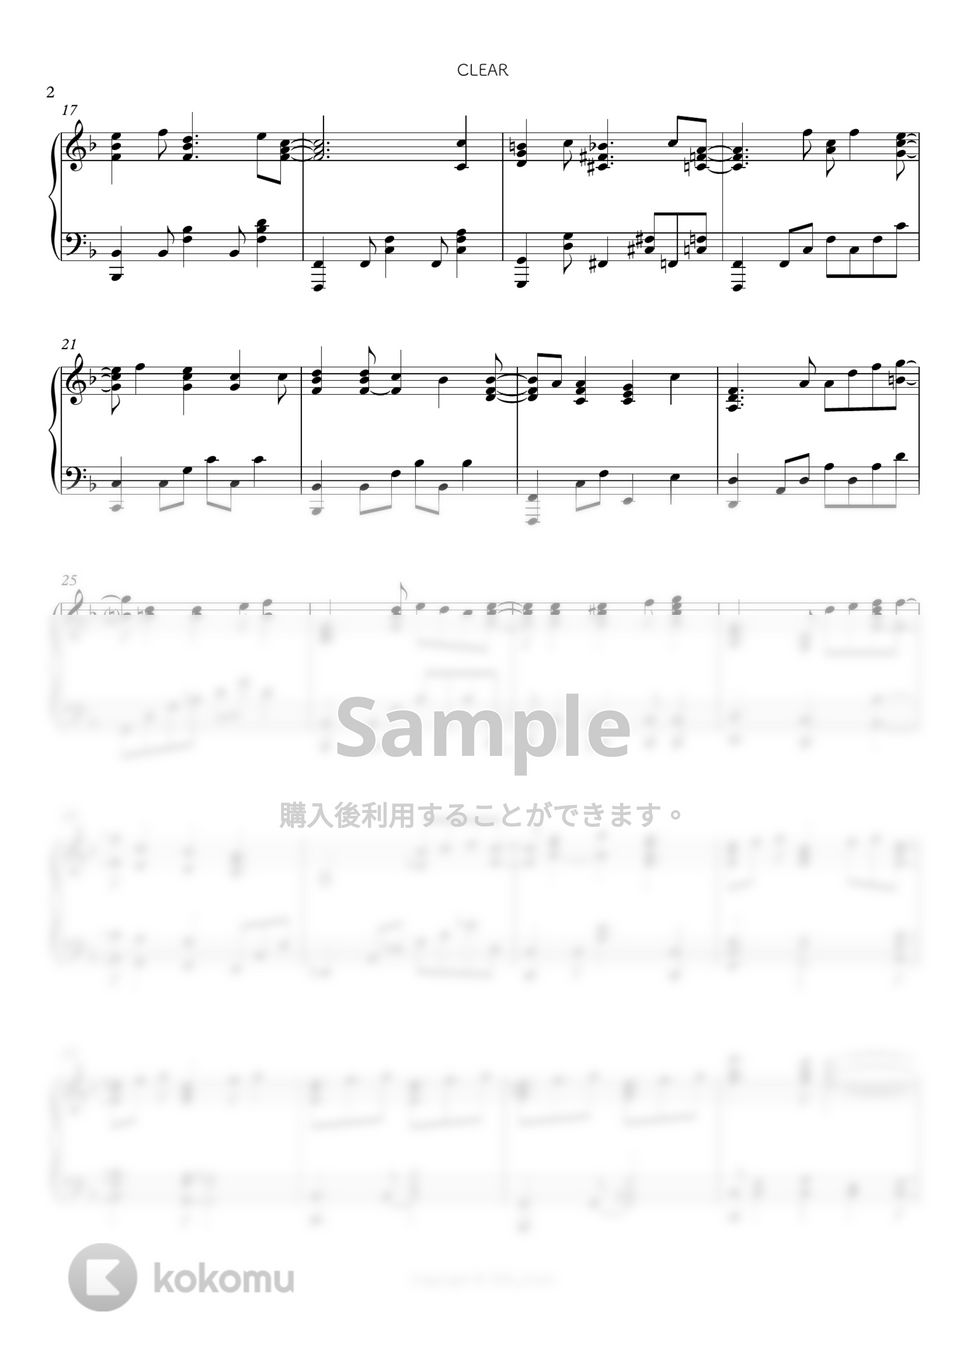 カードキャプターさくら クリアカード編 - CLEAR by シビウォルピアノ